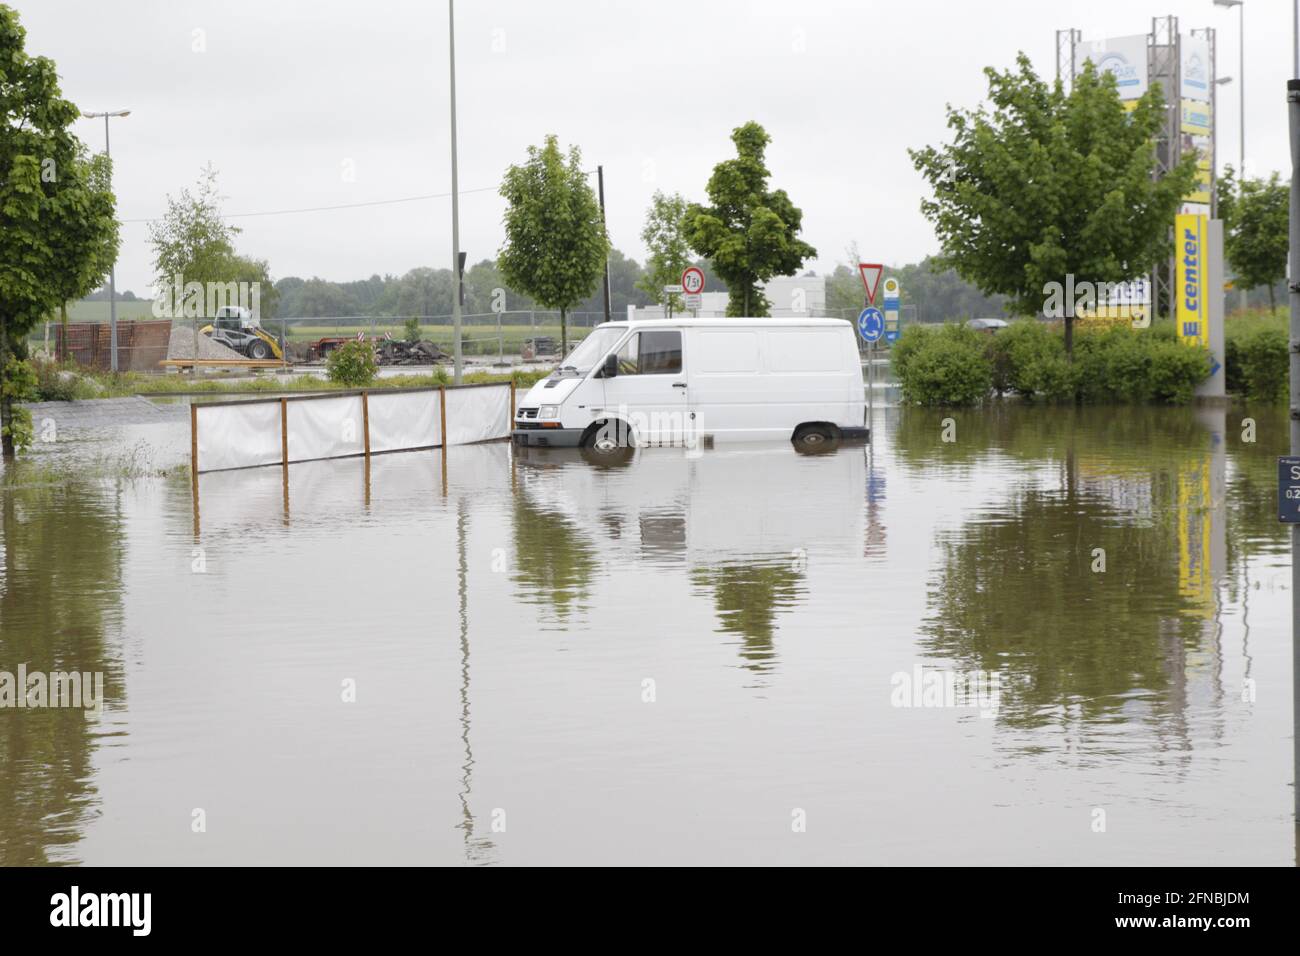 Ein Transporter bei Überschwemmung auf einem Parkplatz Hochwasser bis über die Reifen Stock Photo